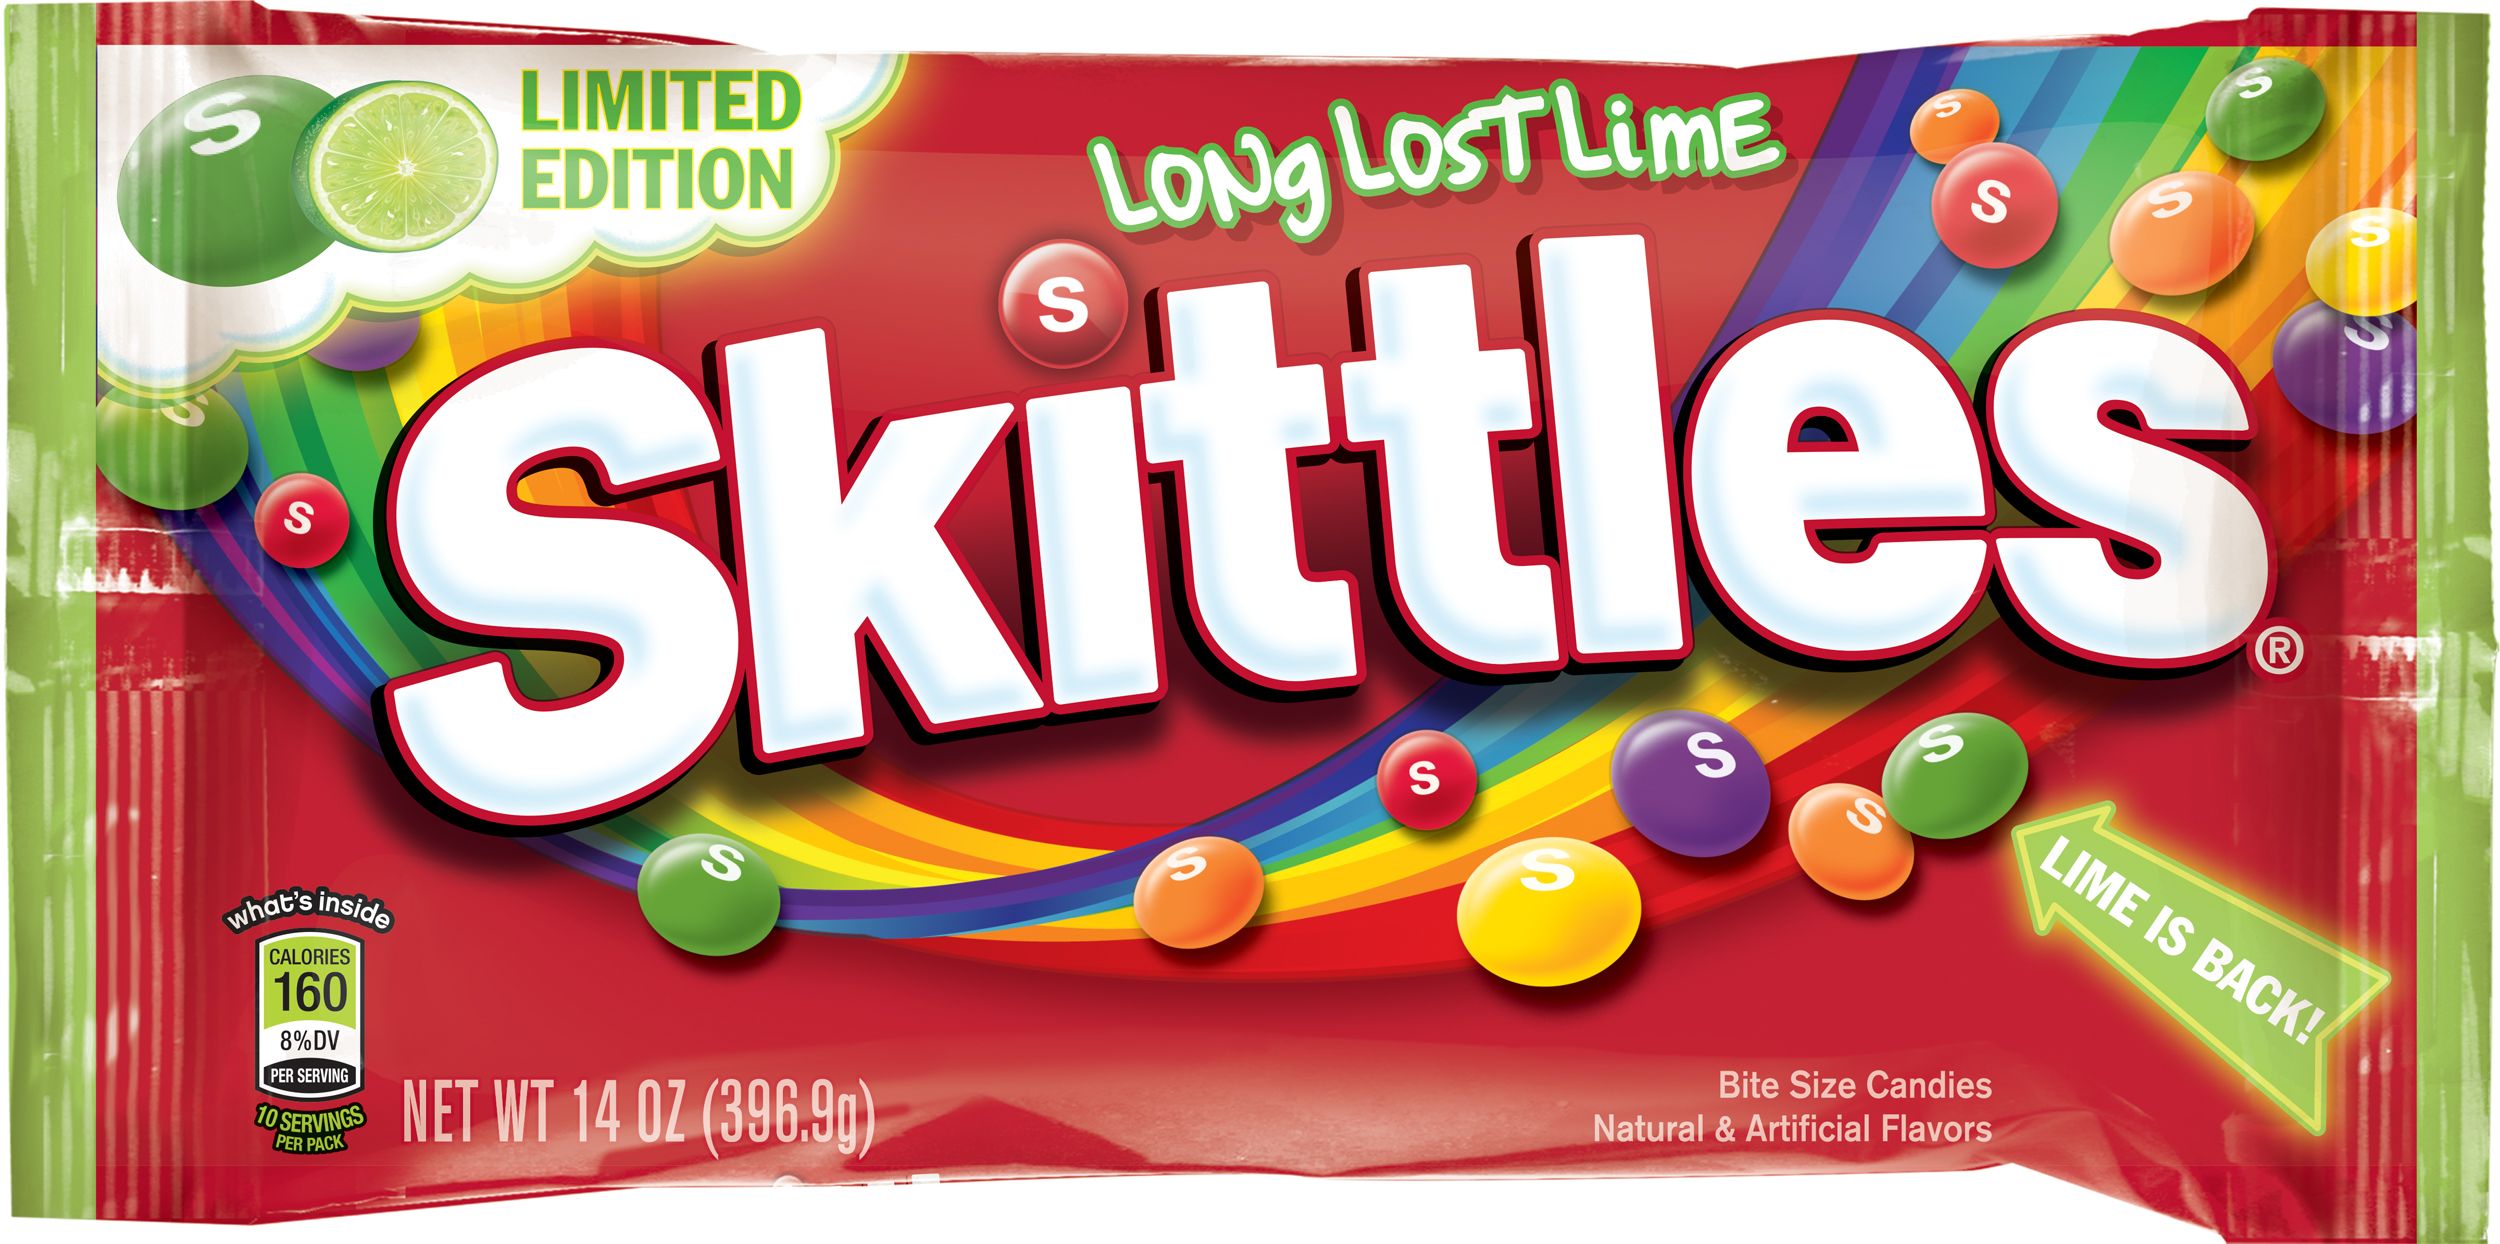 СКИТЛС. Skittles конфеты. СКИТЛС маленькая пачка. Skittles Limited Edition. Скитлс вызывает рак